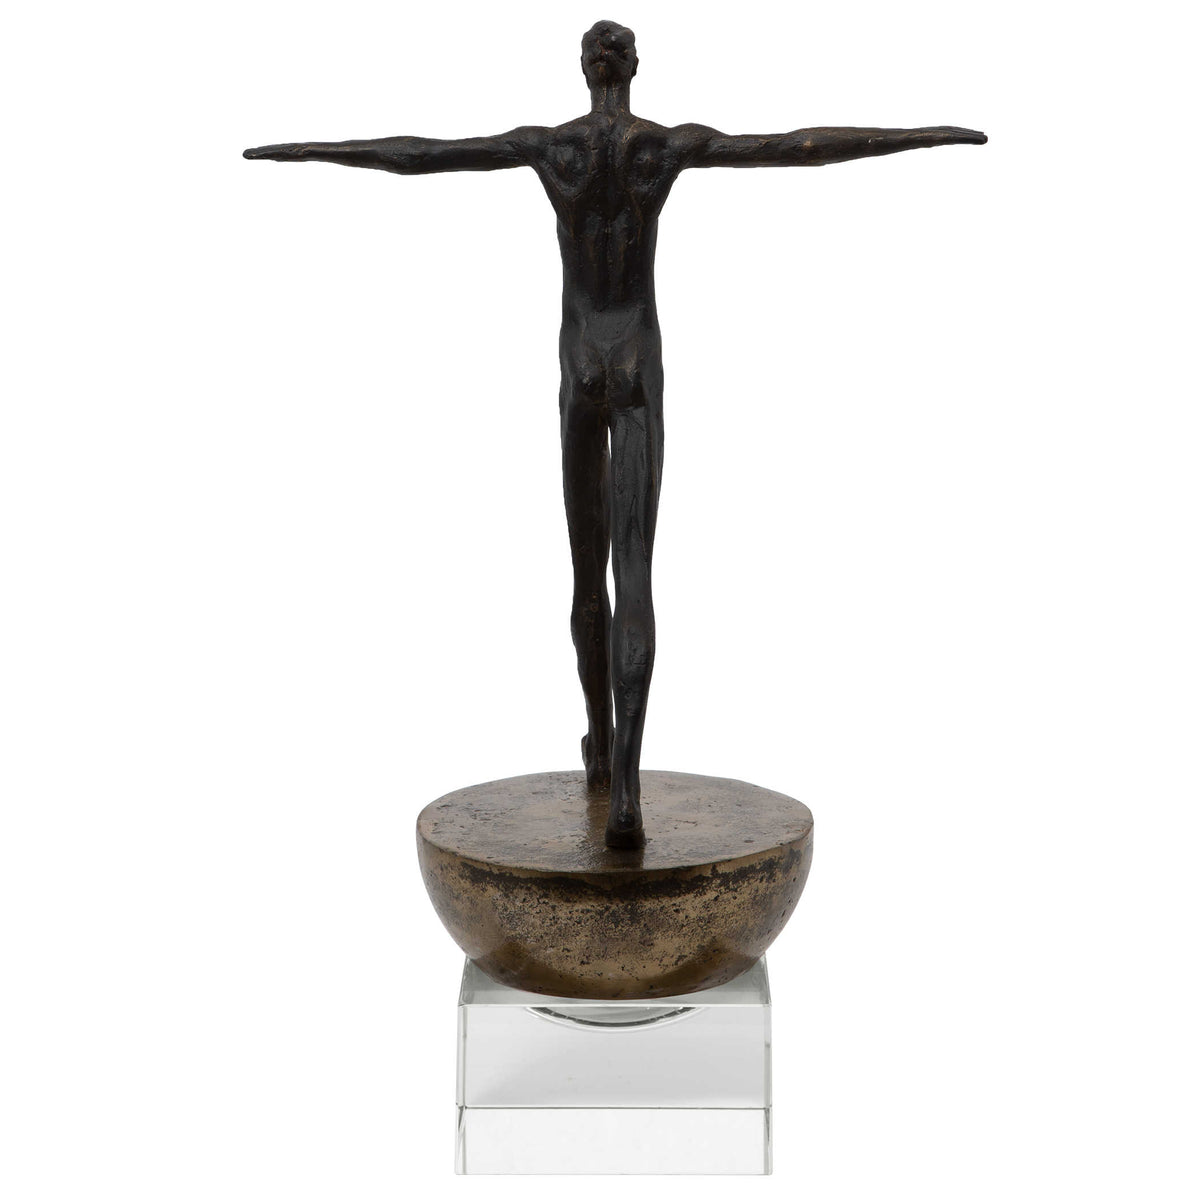 Man Finding Balance Sculpture